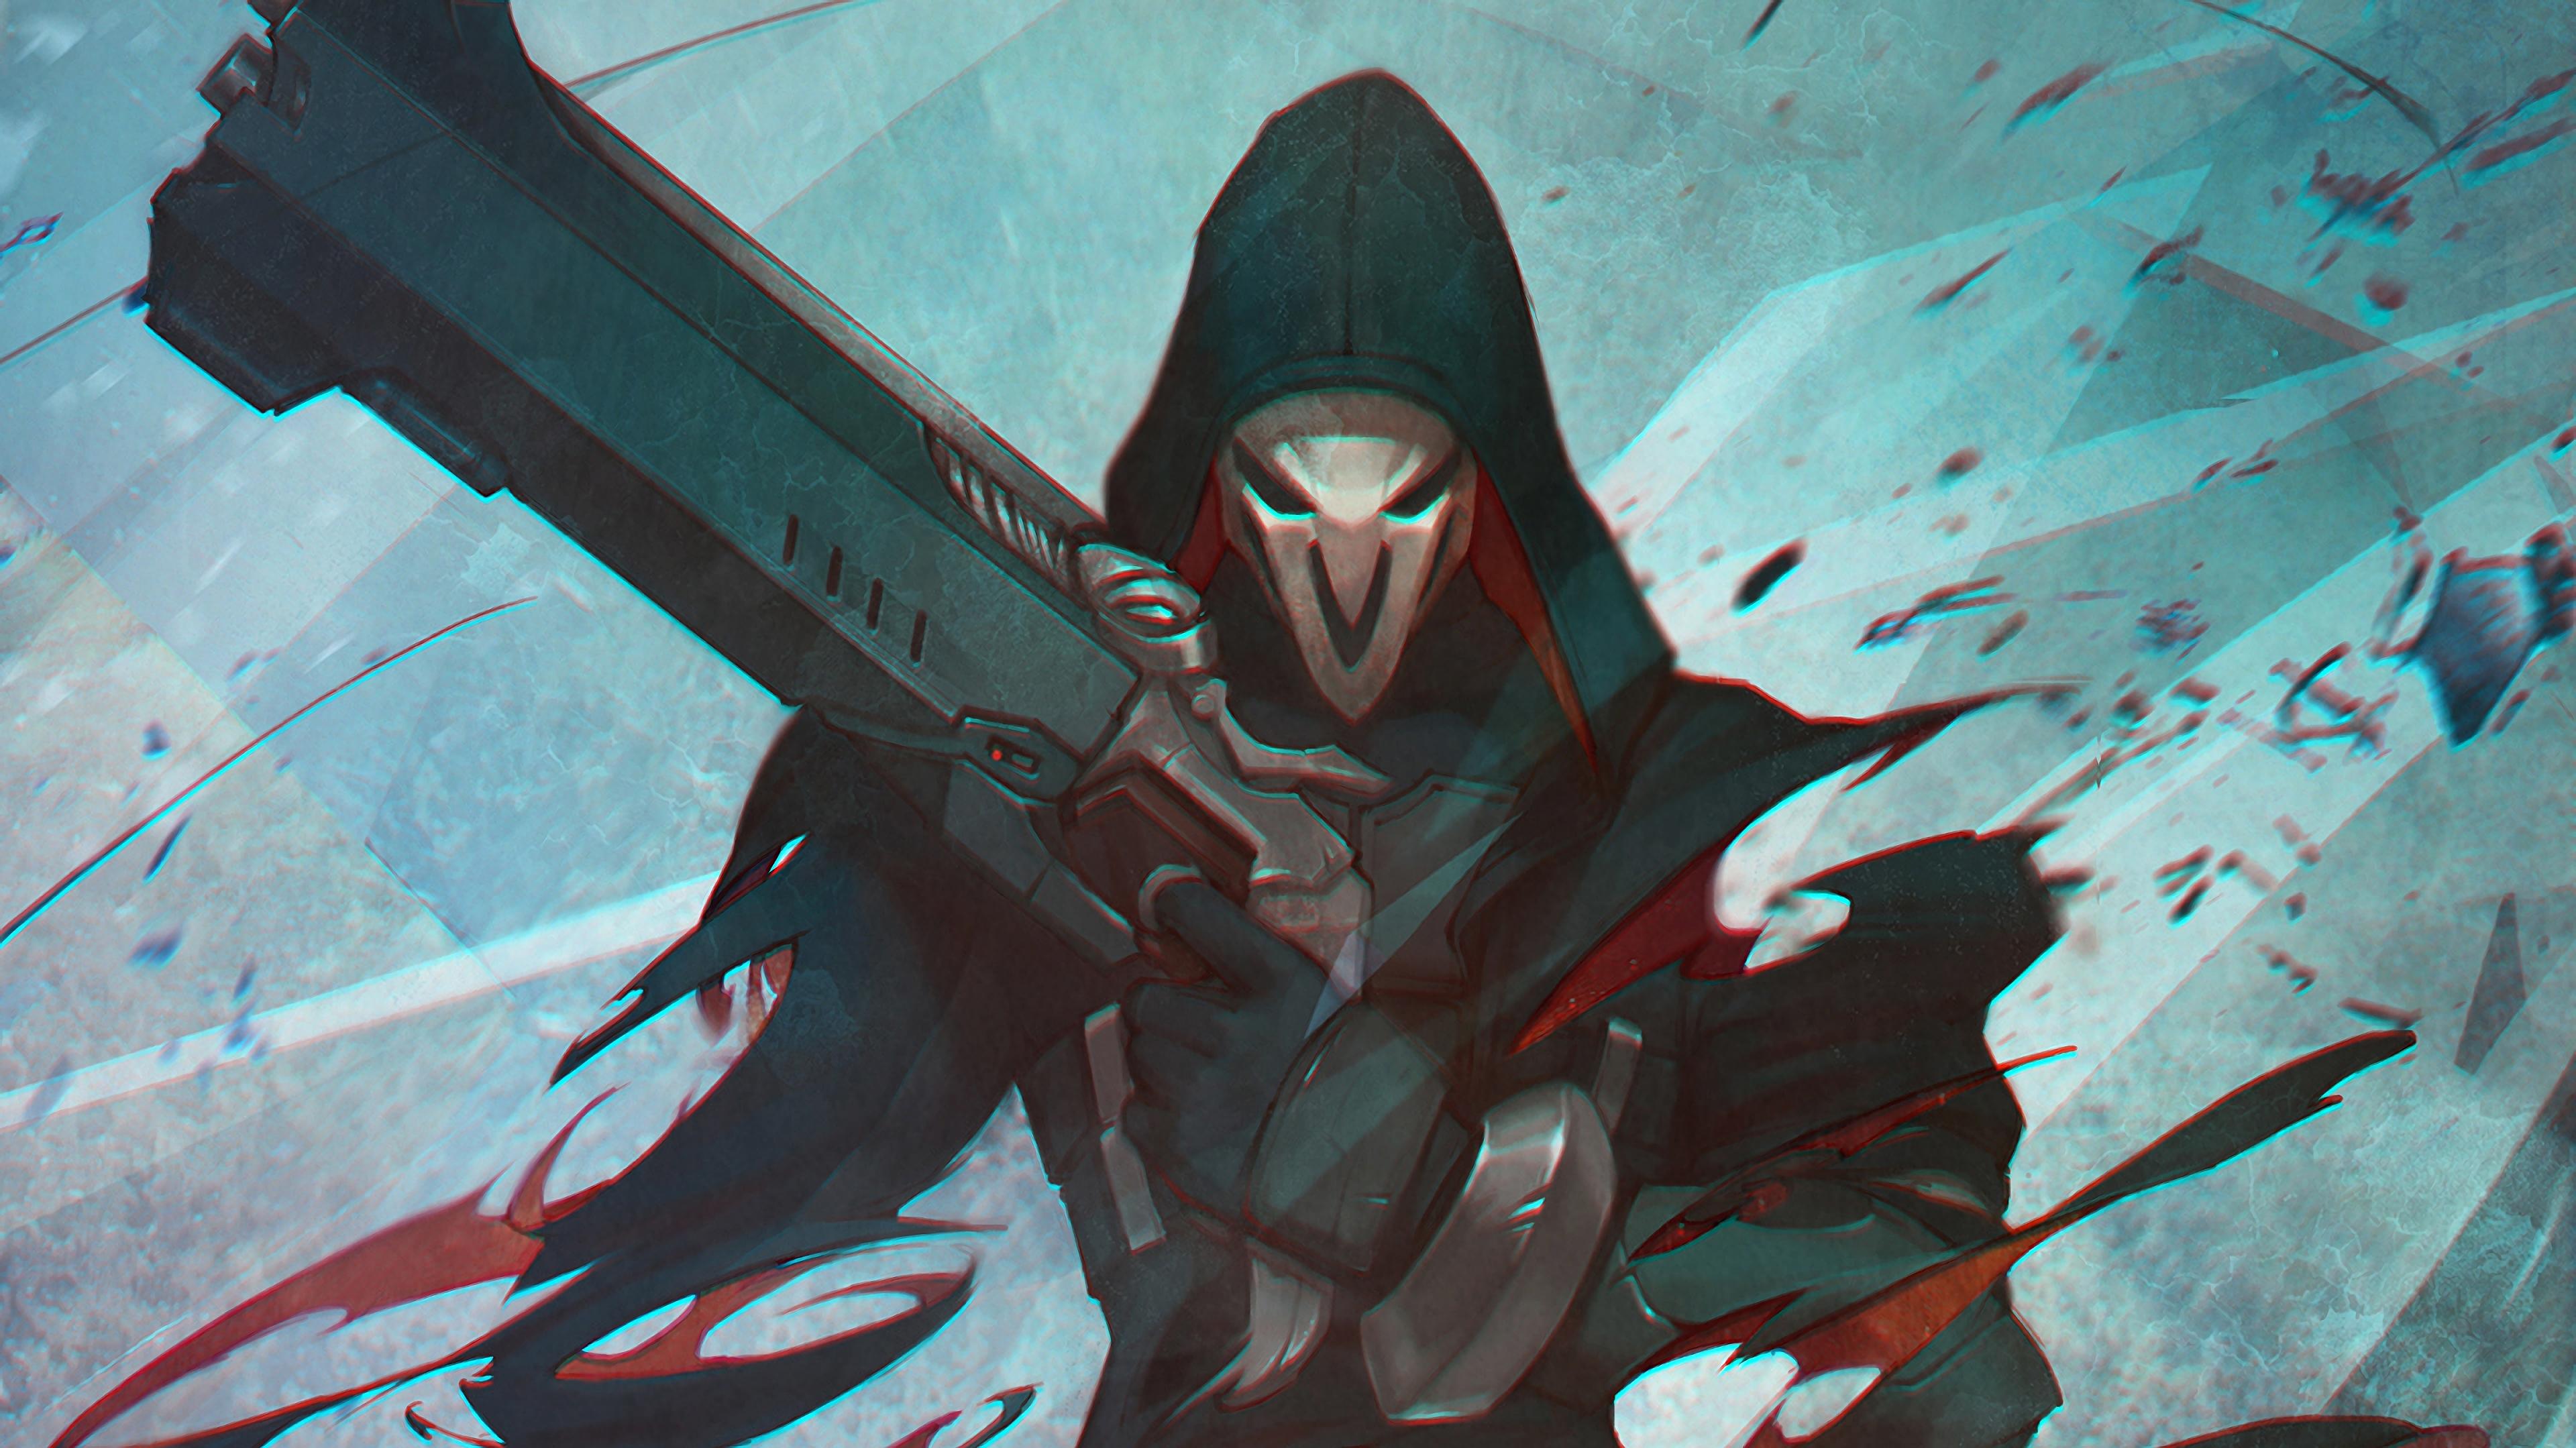 Reaper Overwatch wallpaper by Absinak  Download on ZEDGE  1c0e